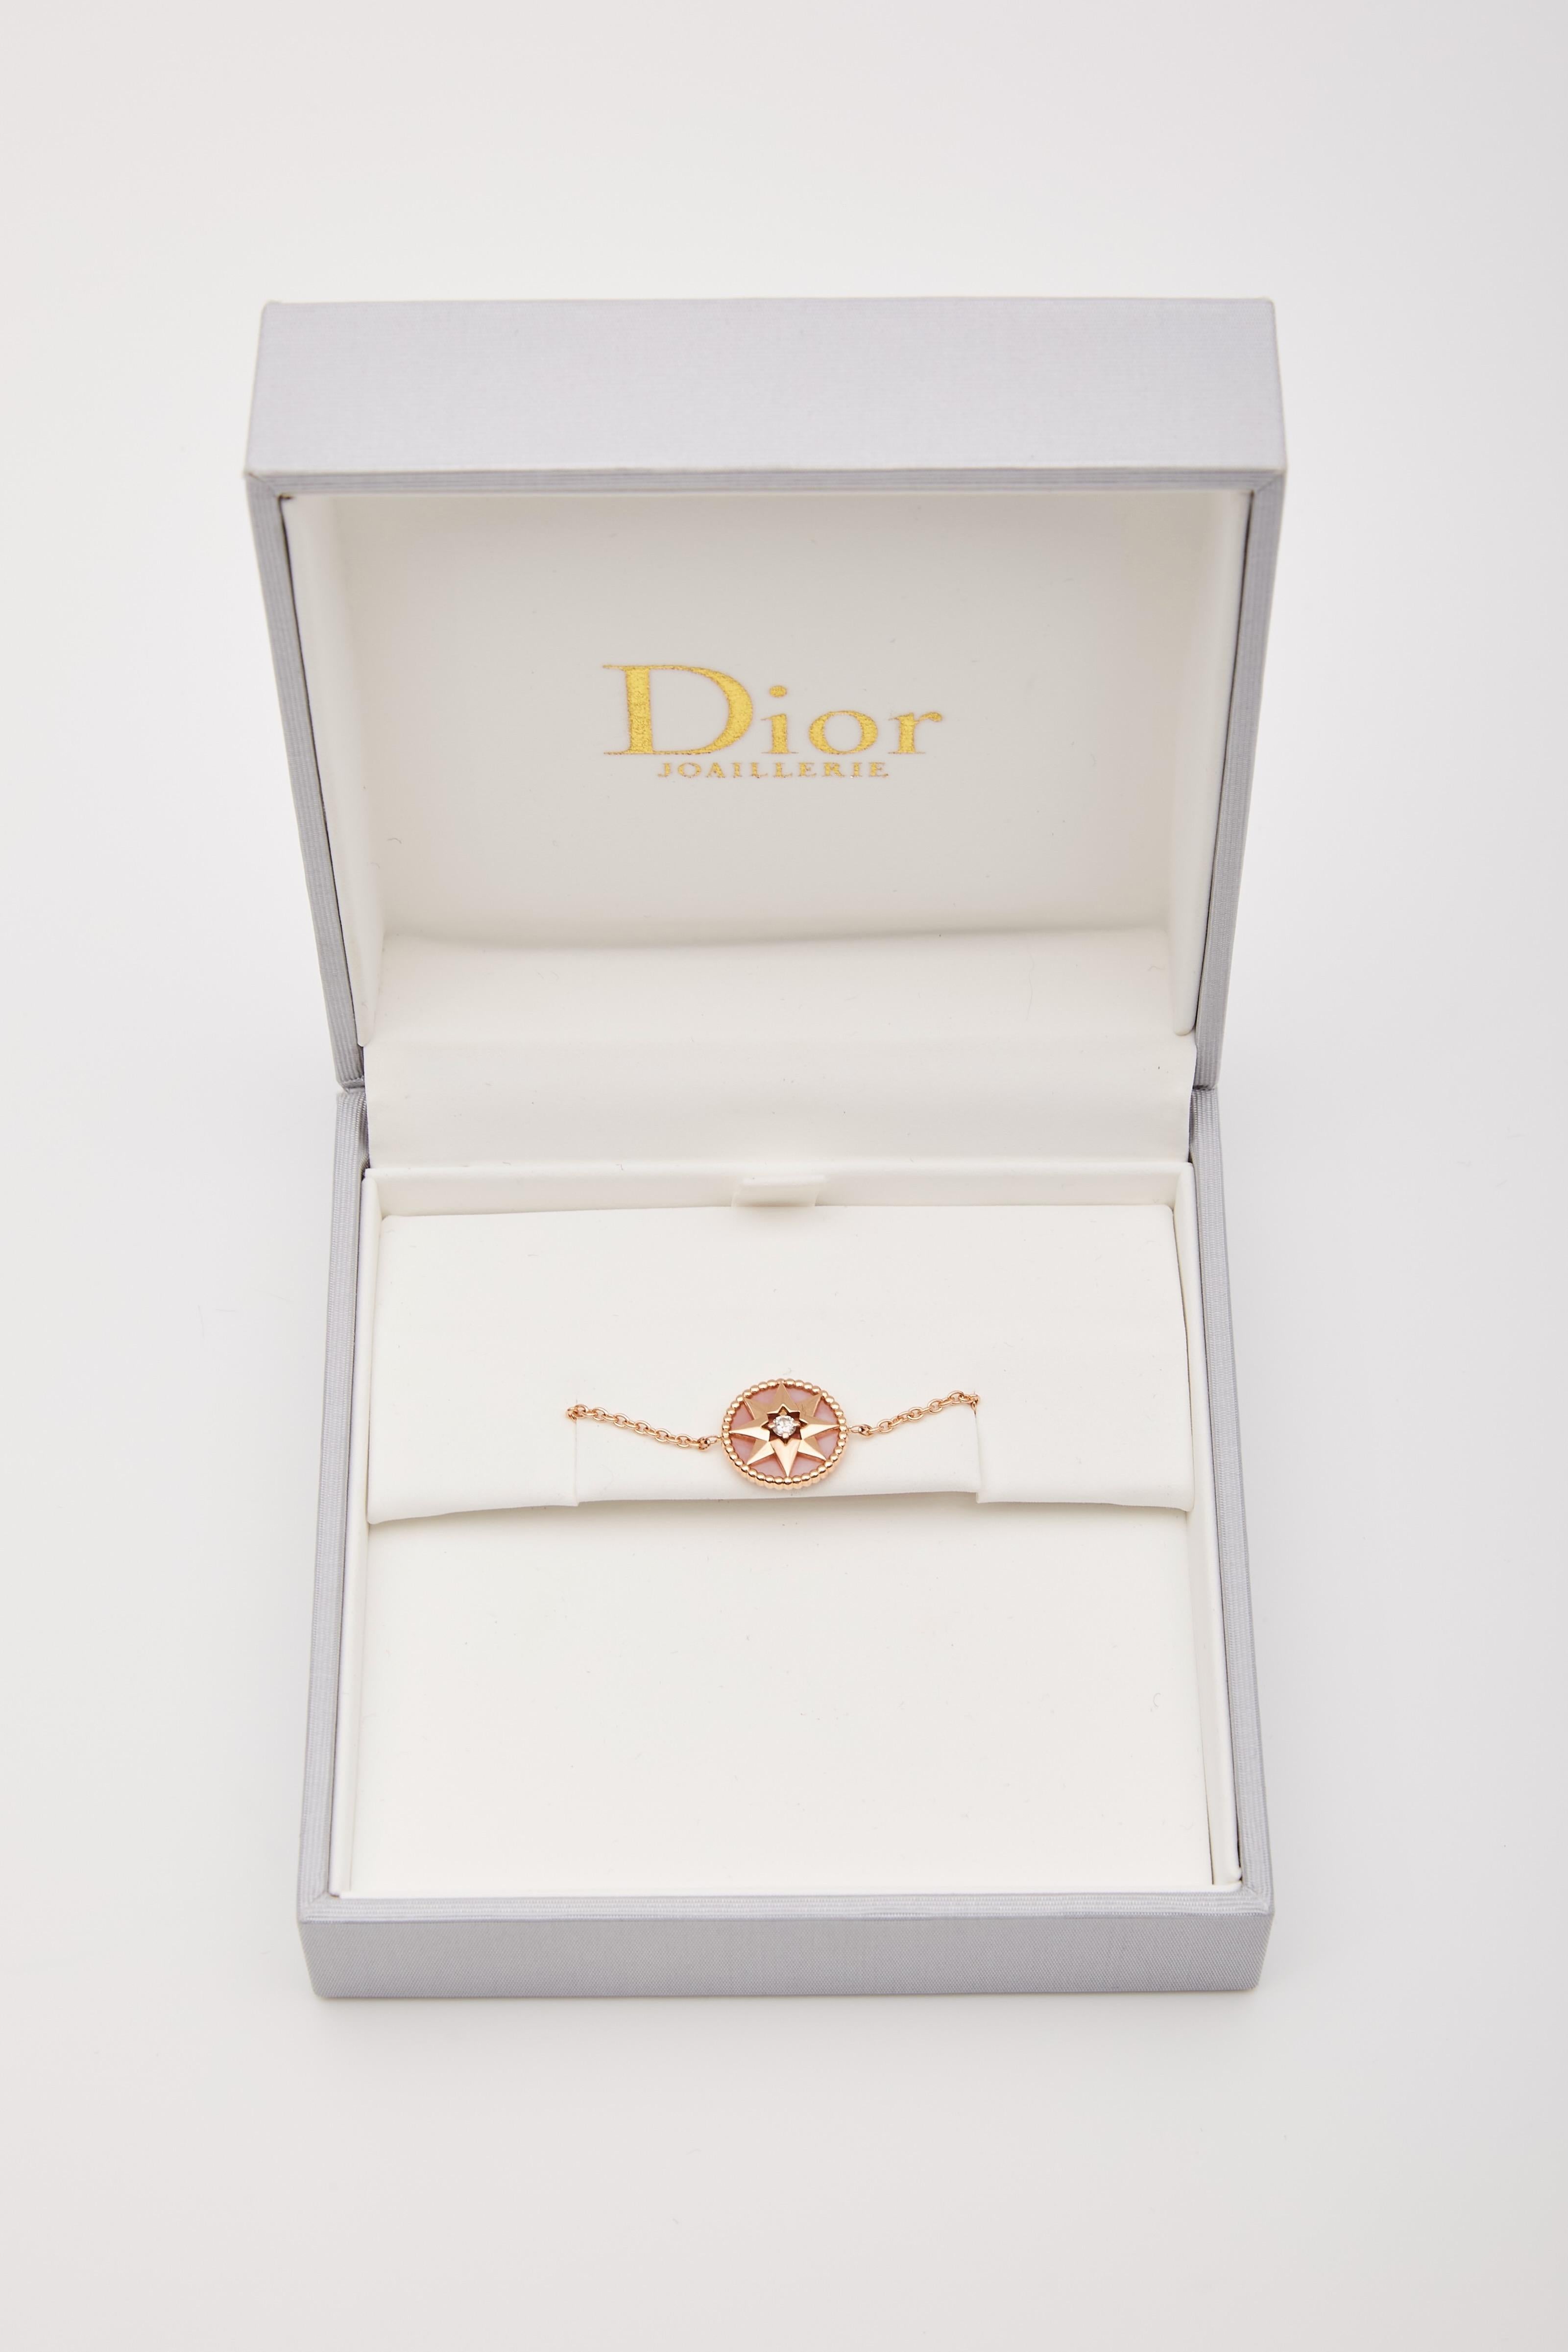 DIOR 18K DIAMANT  ROSE DE VENTS CHARM ARMBAND

Wir präsentieren das Dior Armband mit Sternmotiv und roségoldenen Perlen. Das Armband besteht aus einer Kette aus 18 Karat Roségold mit einem Sternanhänger, der in der Mitte mit einem schönen Diamanten